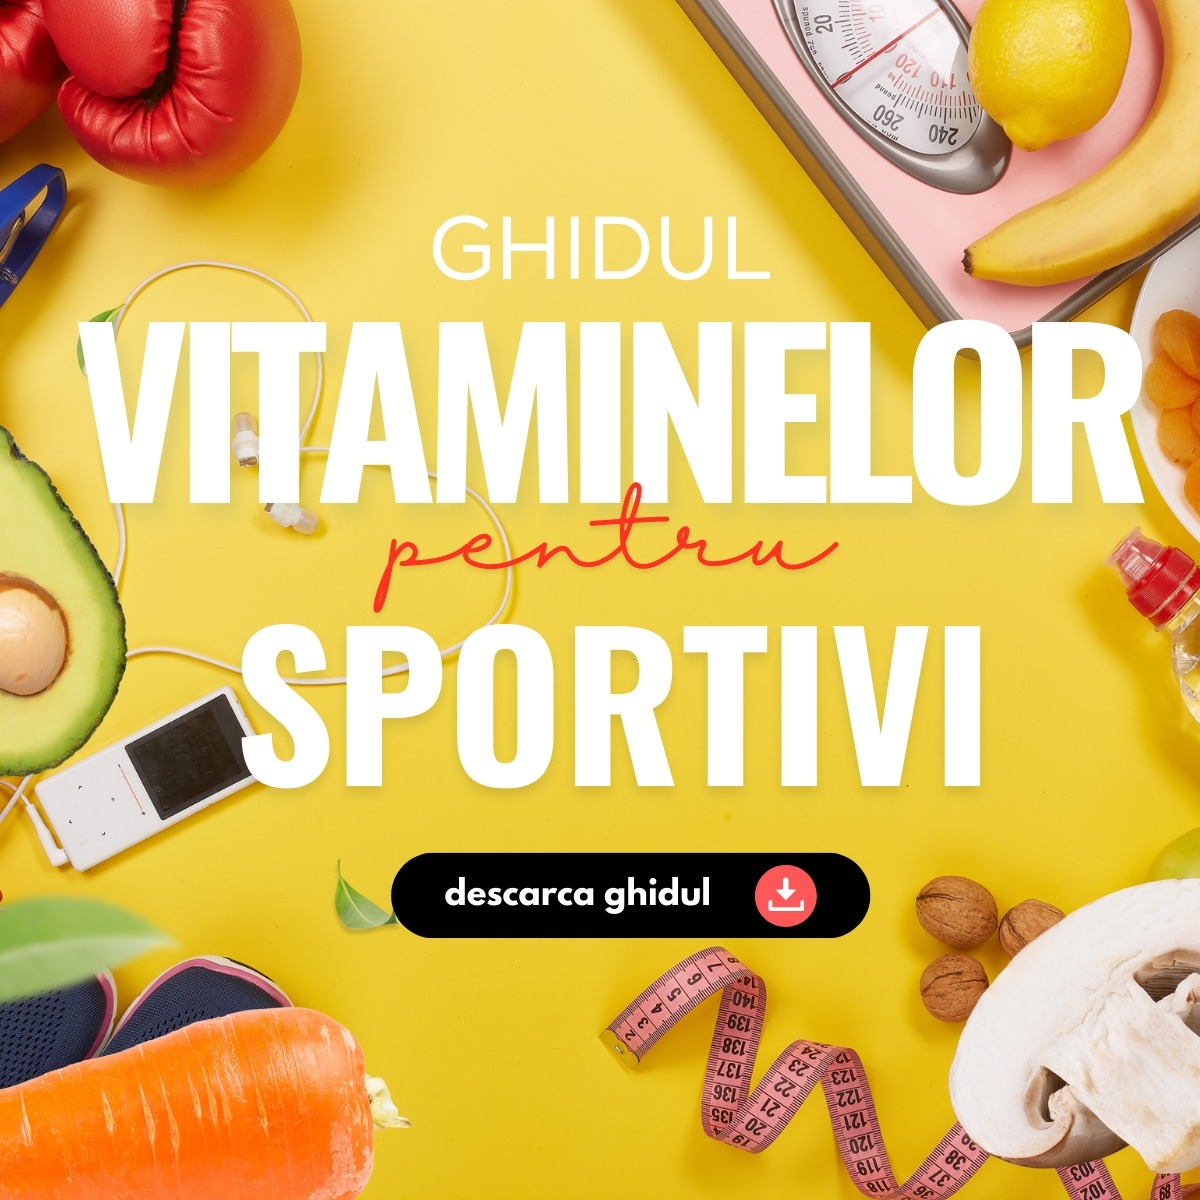 Ghidul Vitaminelor si Mineralelor recomandate pentru Sportivi